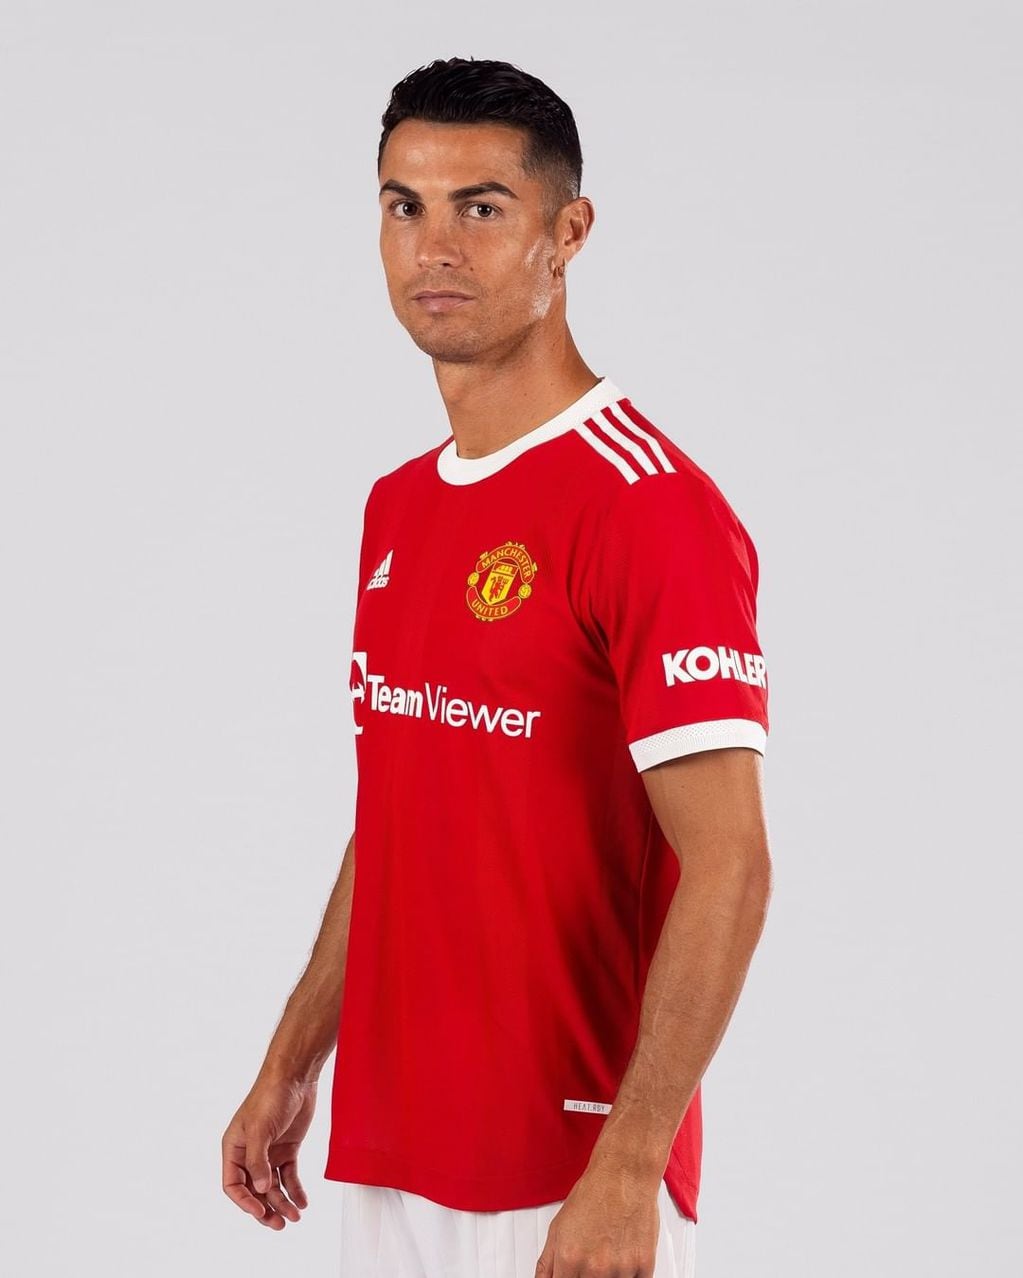 La primera foto de Cristiano Ronaldo con la camiseta del Manchester United